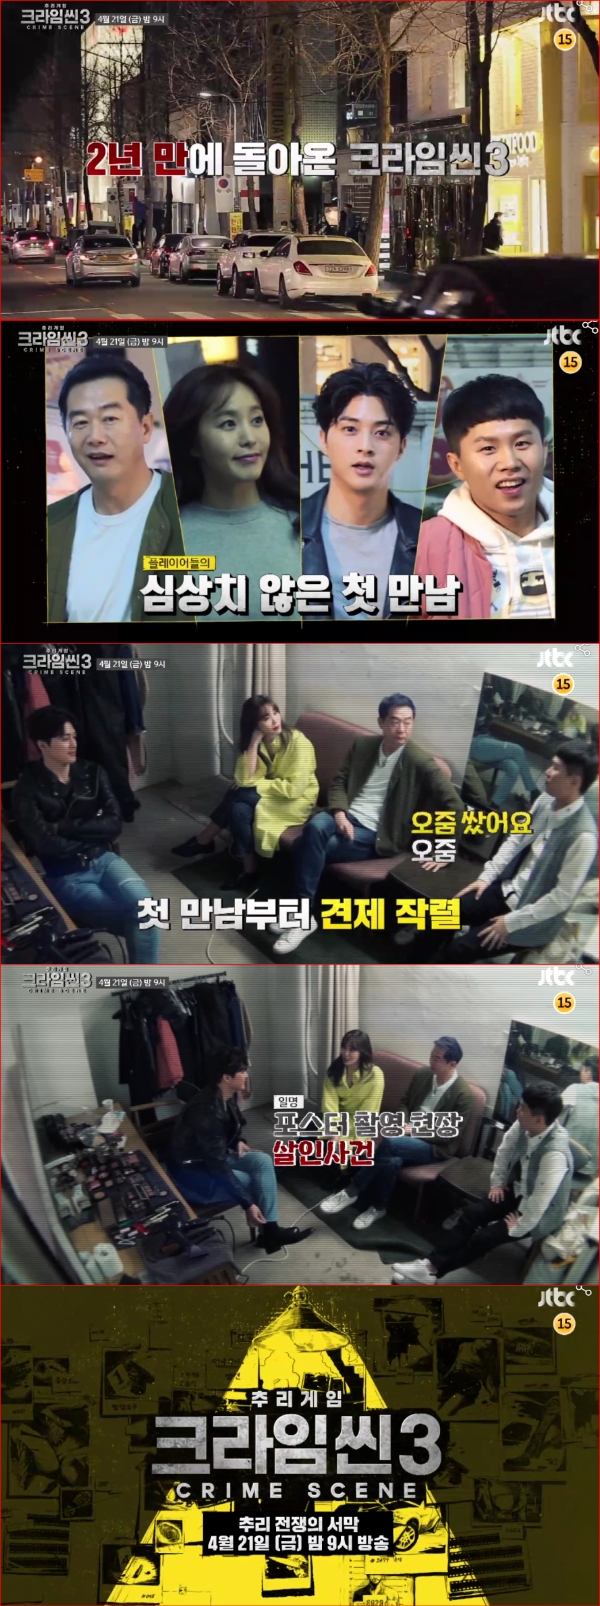 28일 밤 9시 ‘크라임씬3’가 JTBC에서 첫 방송을 시작한다. /사진=JTBC 크라임씬3 예고방송 캡처